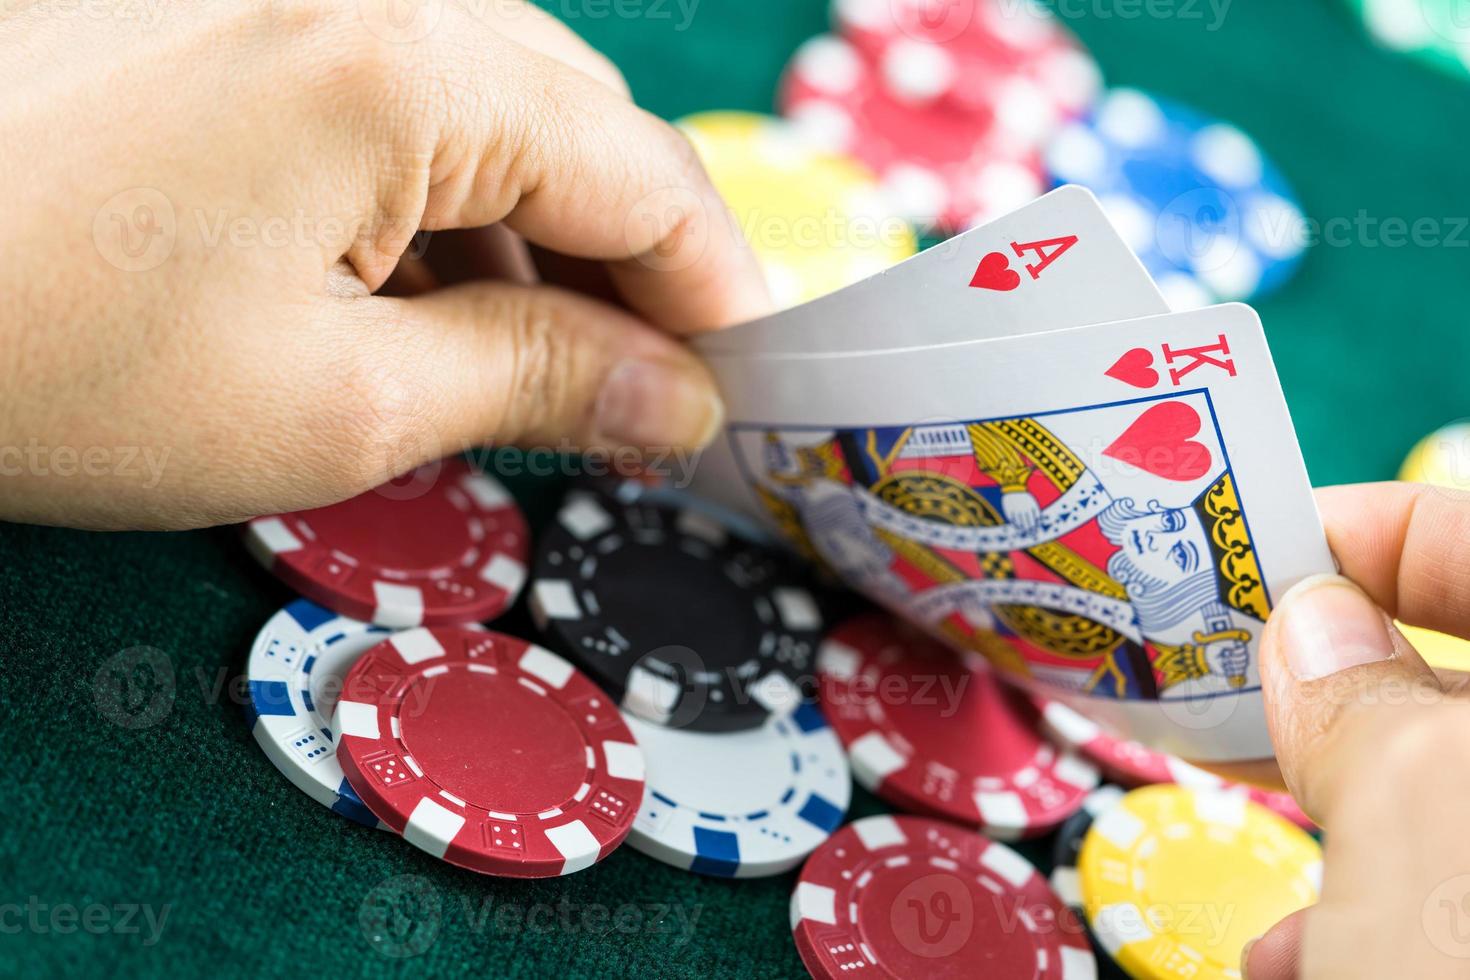 jeu de cartes de poker blackjack main montrée et dés photo